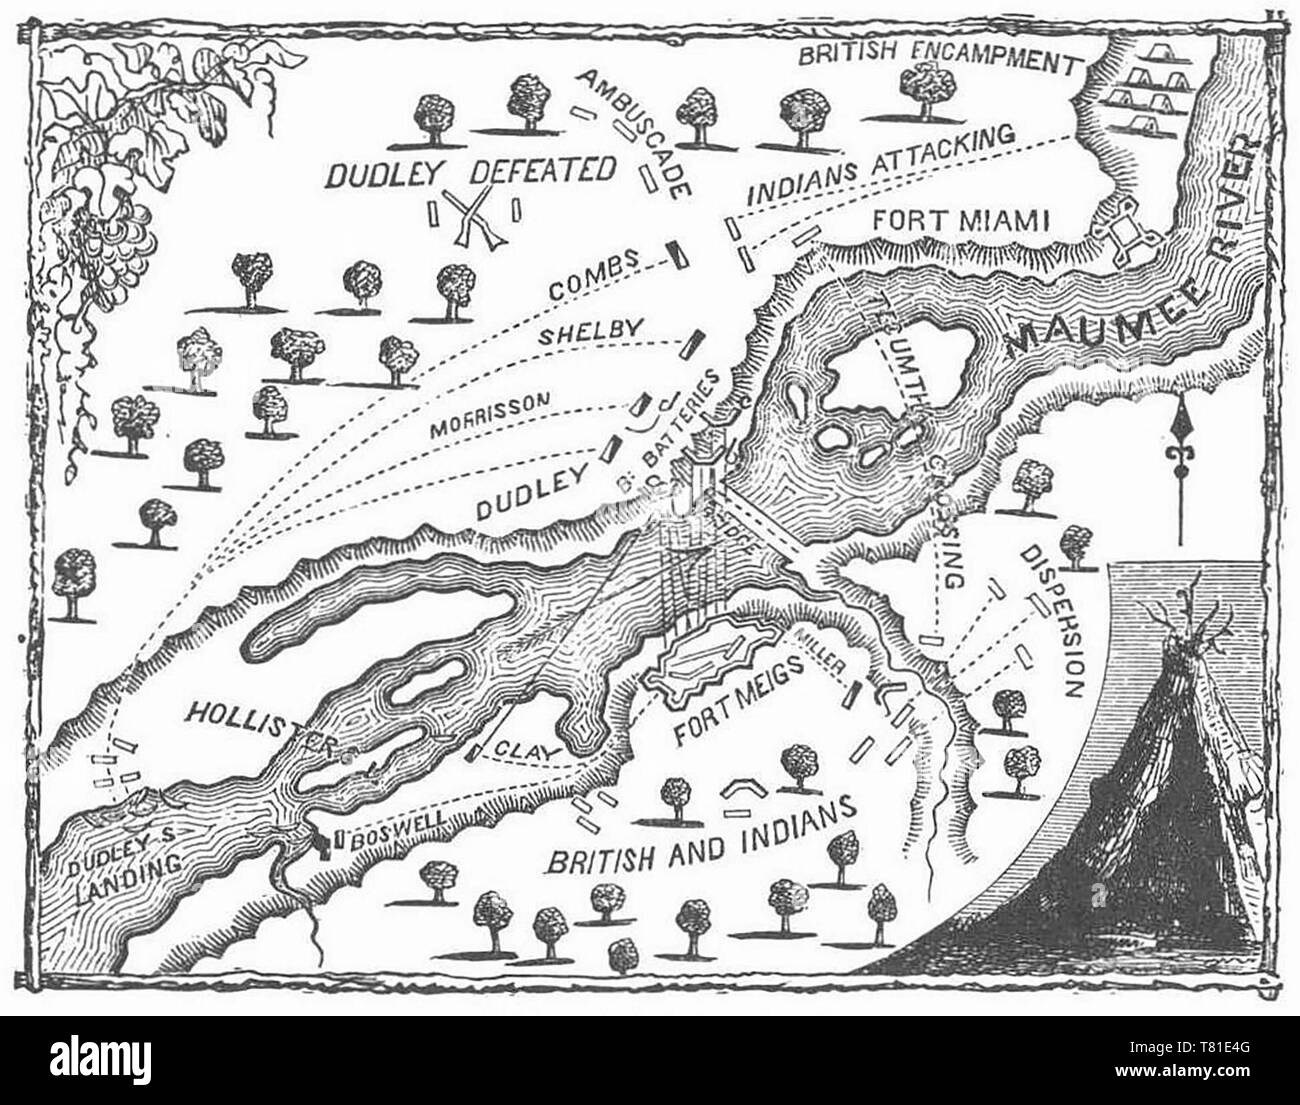 Plan de batalla de Fort Meigs, desde la guerra de 1812 Foto de stock